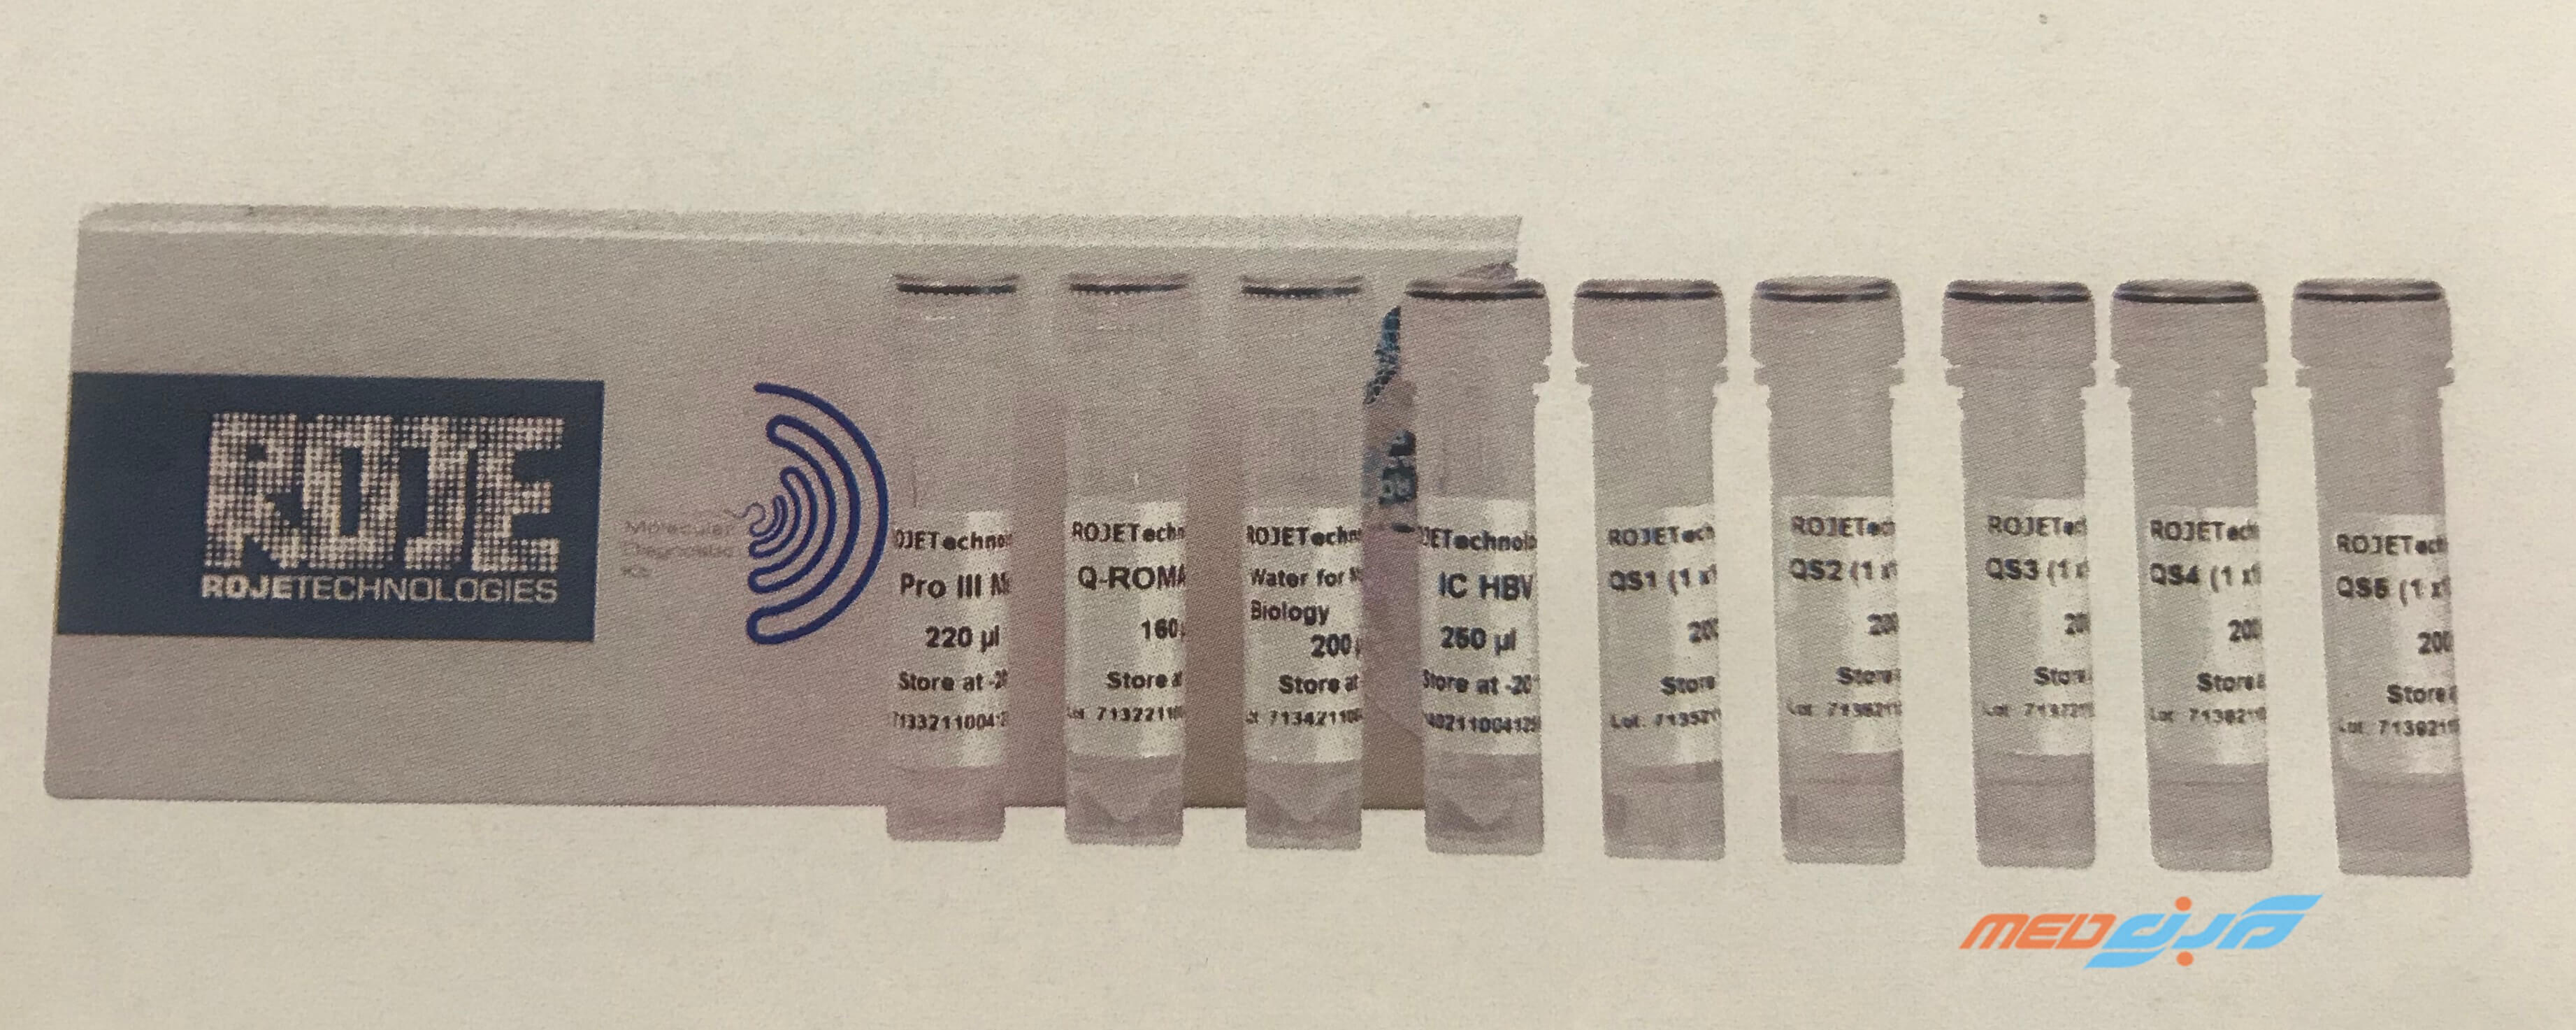 کیت تشخیص مولکولی Quantitative Real Time PCR HBV روژه -Viga Quantitative HBV Molecular Diagnostic Kit